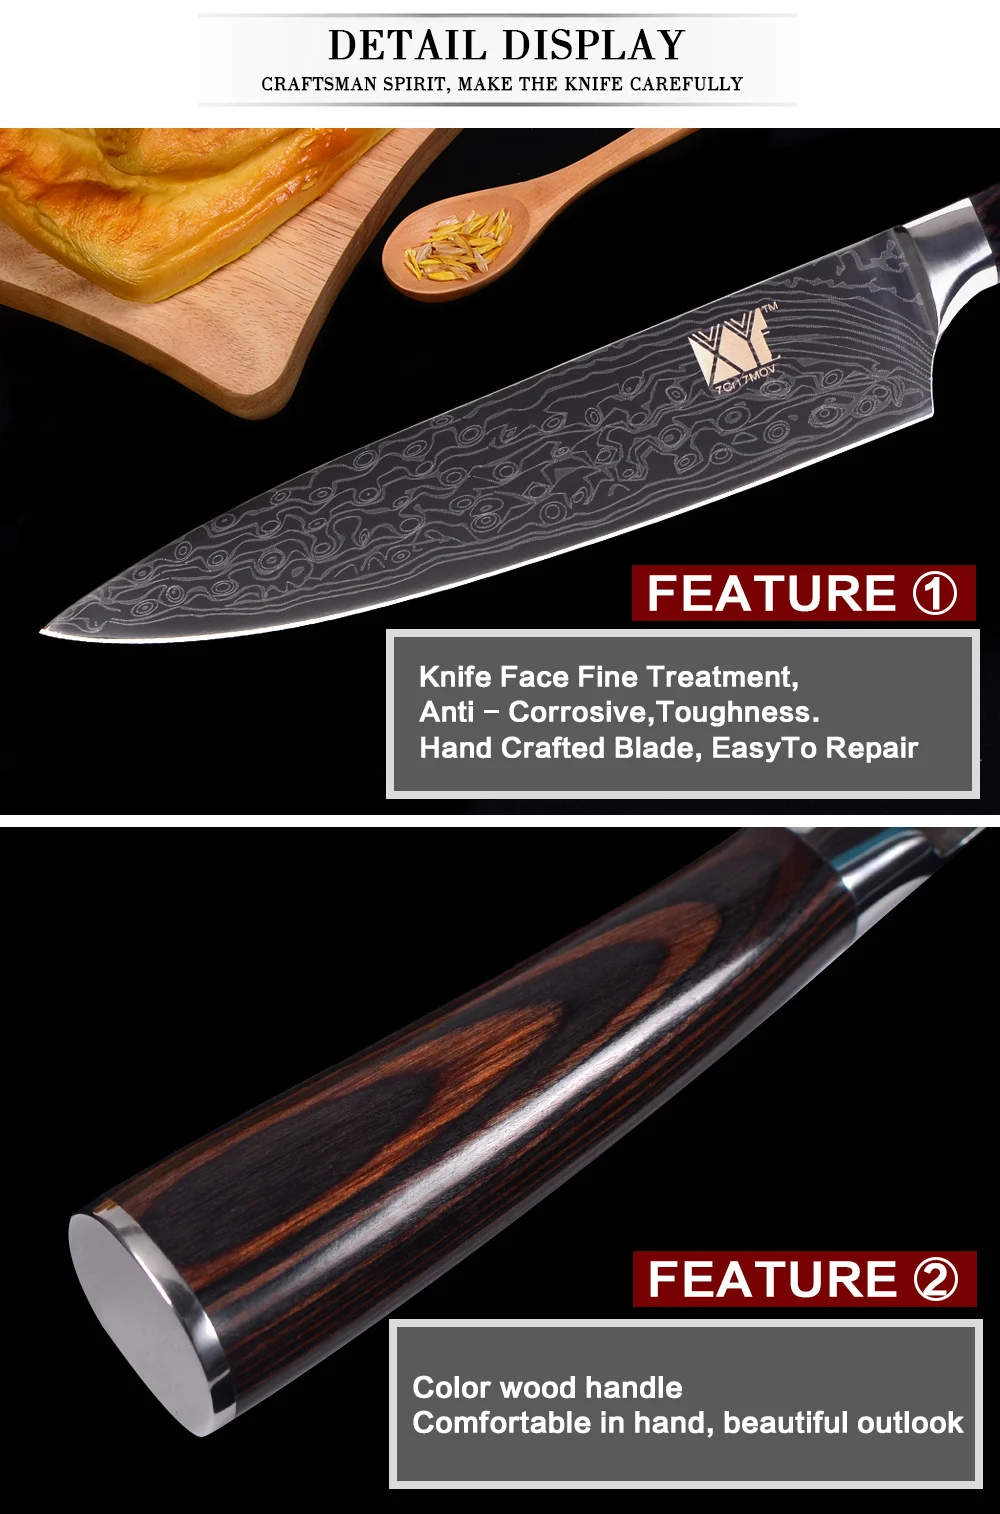 XYj набор кухонных ножей 7cr17, набор ножей из нержавеющей стали, Новое поступление, Дамасские жилы, кухонные ножи, аксессуары, инструменты